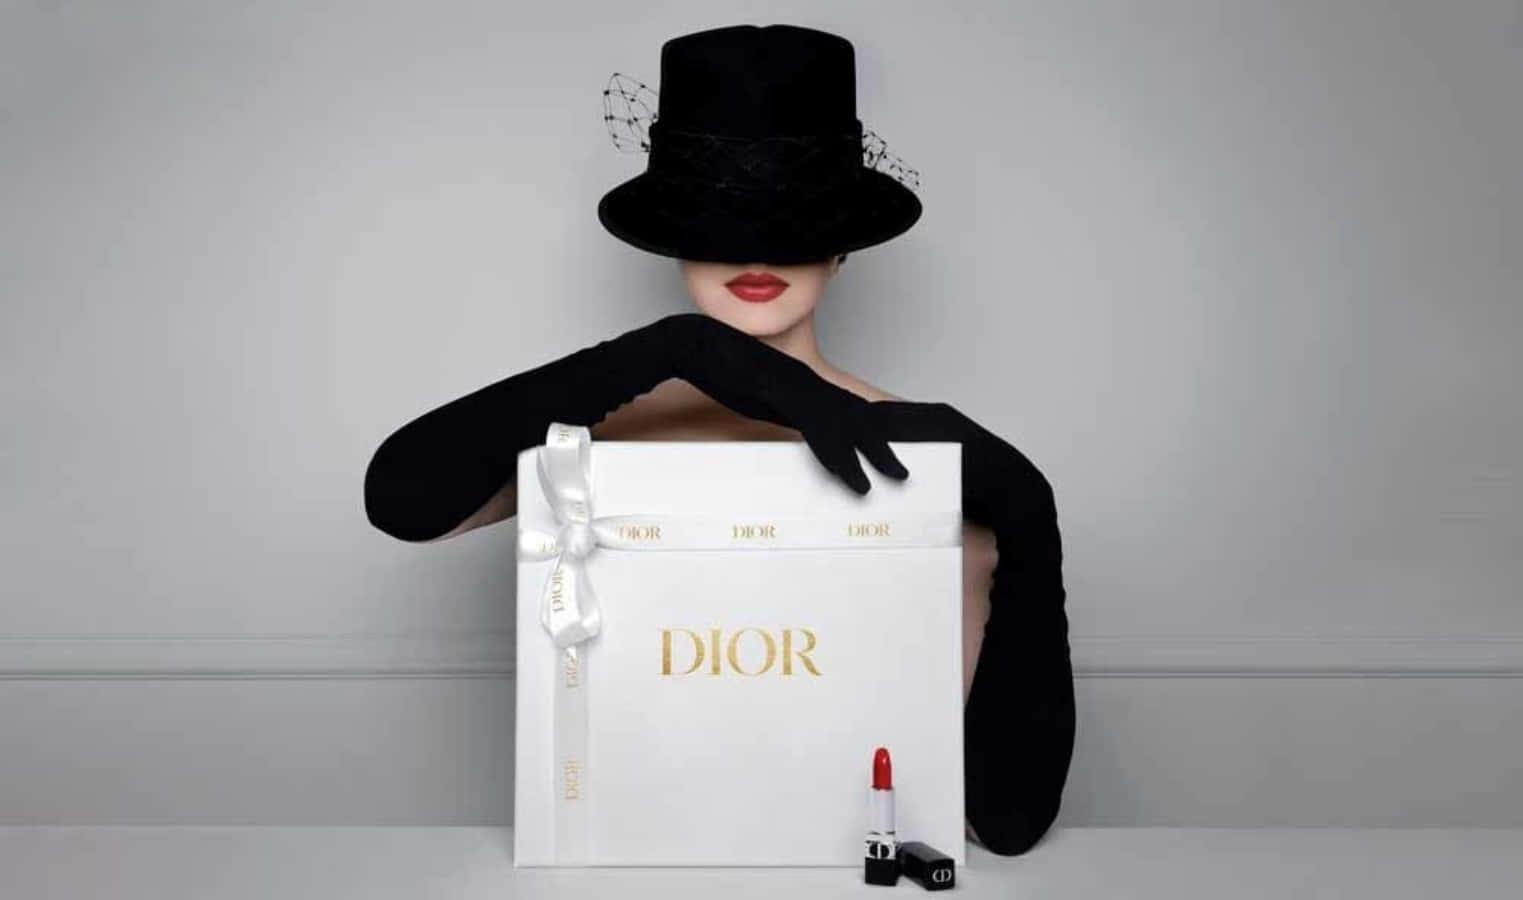 Stileelevato: Fai Una Dichiarazione Con Dior.